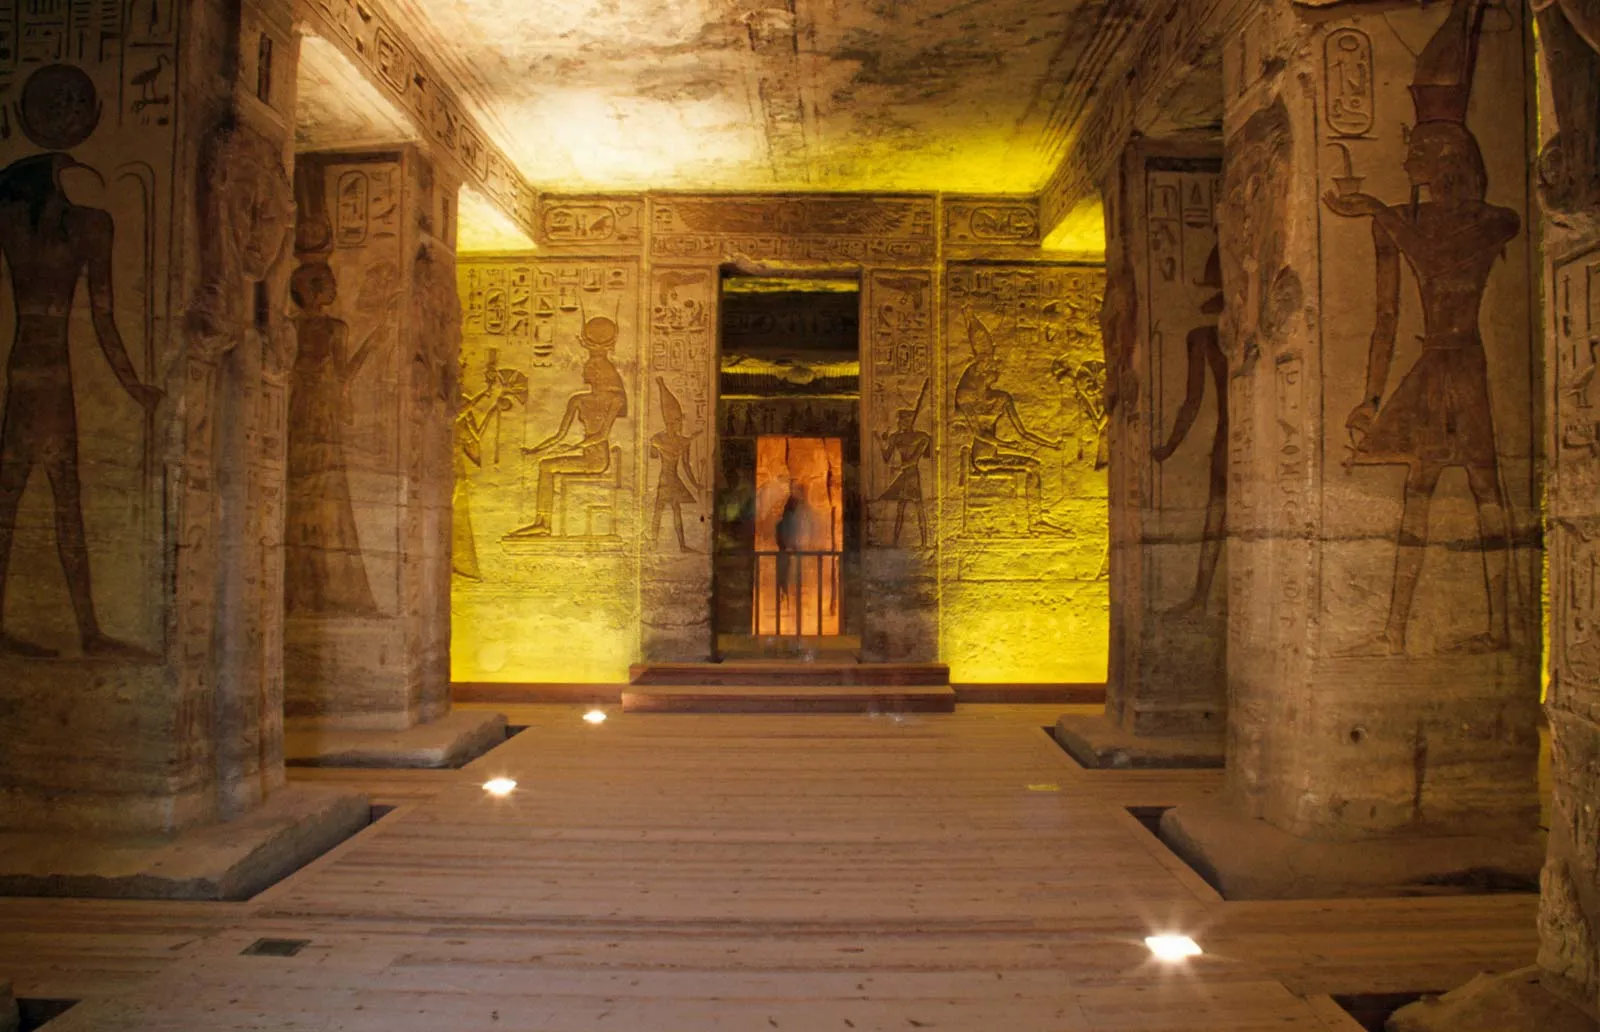  MMM Đền Abu Simbel, Ai CậpBan đầu được chạm khắc trên đá và nằm trên những ngọn đồi linh thiêng Meha và Ibshek ở miền nam Ai Cập gần biên giới Sudan, hai ngôi đền Abu Simbel được Pharaoh Ramses II xây dựng như một phần của chương trình xây dựng vĩ đại ở Nubia, khi đó do Ai Cập kiểm soát. Các cấu trúc ban đầu được hoàn thành vào thế kỷ 13 trước Công nguyên. Thiên niên kỷ sau đó, các ngôi đền được nhà sử học Thụy Sĩ Jean Louis Burckhardt khám phá lại vào năm 1813 và được nhà khảo cổ học người Ý Giovanni Battista Belzoni khai quật vào năm 1817, người đã thành công trong việc loại bỏ cát lấp đầy chúng trước khi mở chúng ra. tới công chúng. Vào những năm 1960, khi nước hồ Nasser dâng cao sau khi xây dựng Đập cao Aswan, các ngôi đền đã được tháo dỡ và xây dựng lại trên vùng đất cao hơn, trên một ngọn đồi nhân tạo, được che chắn khỏi các tác nhân. 